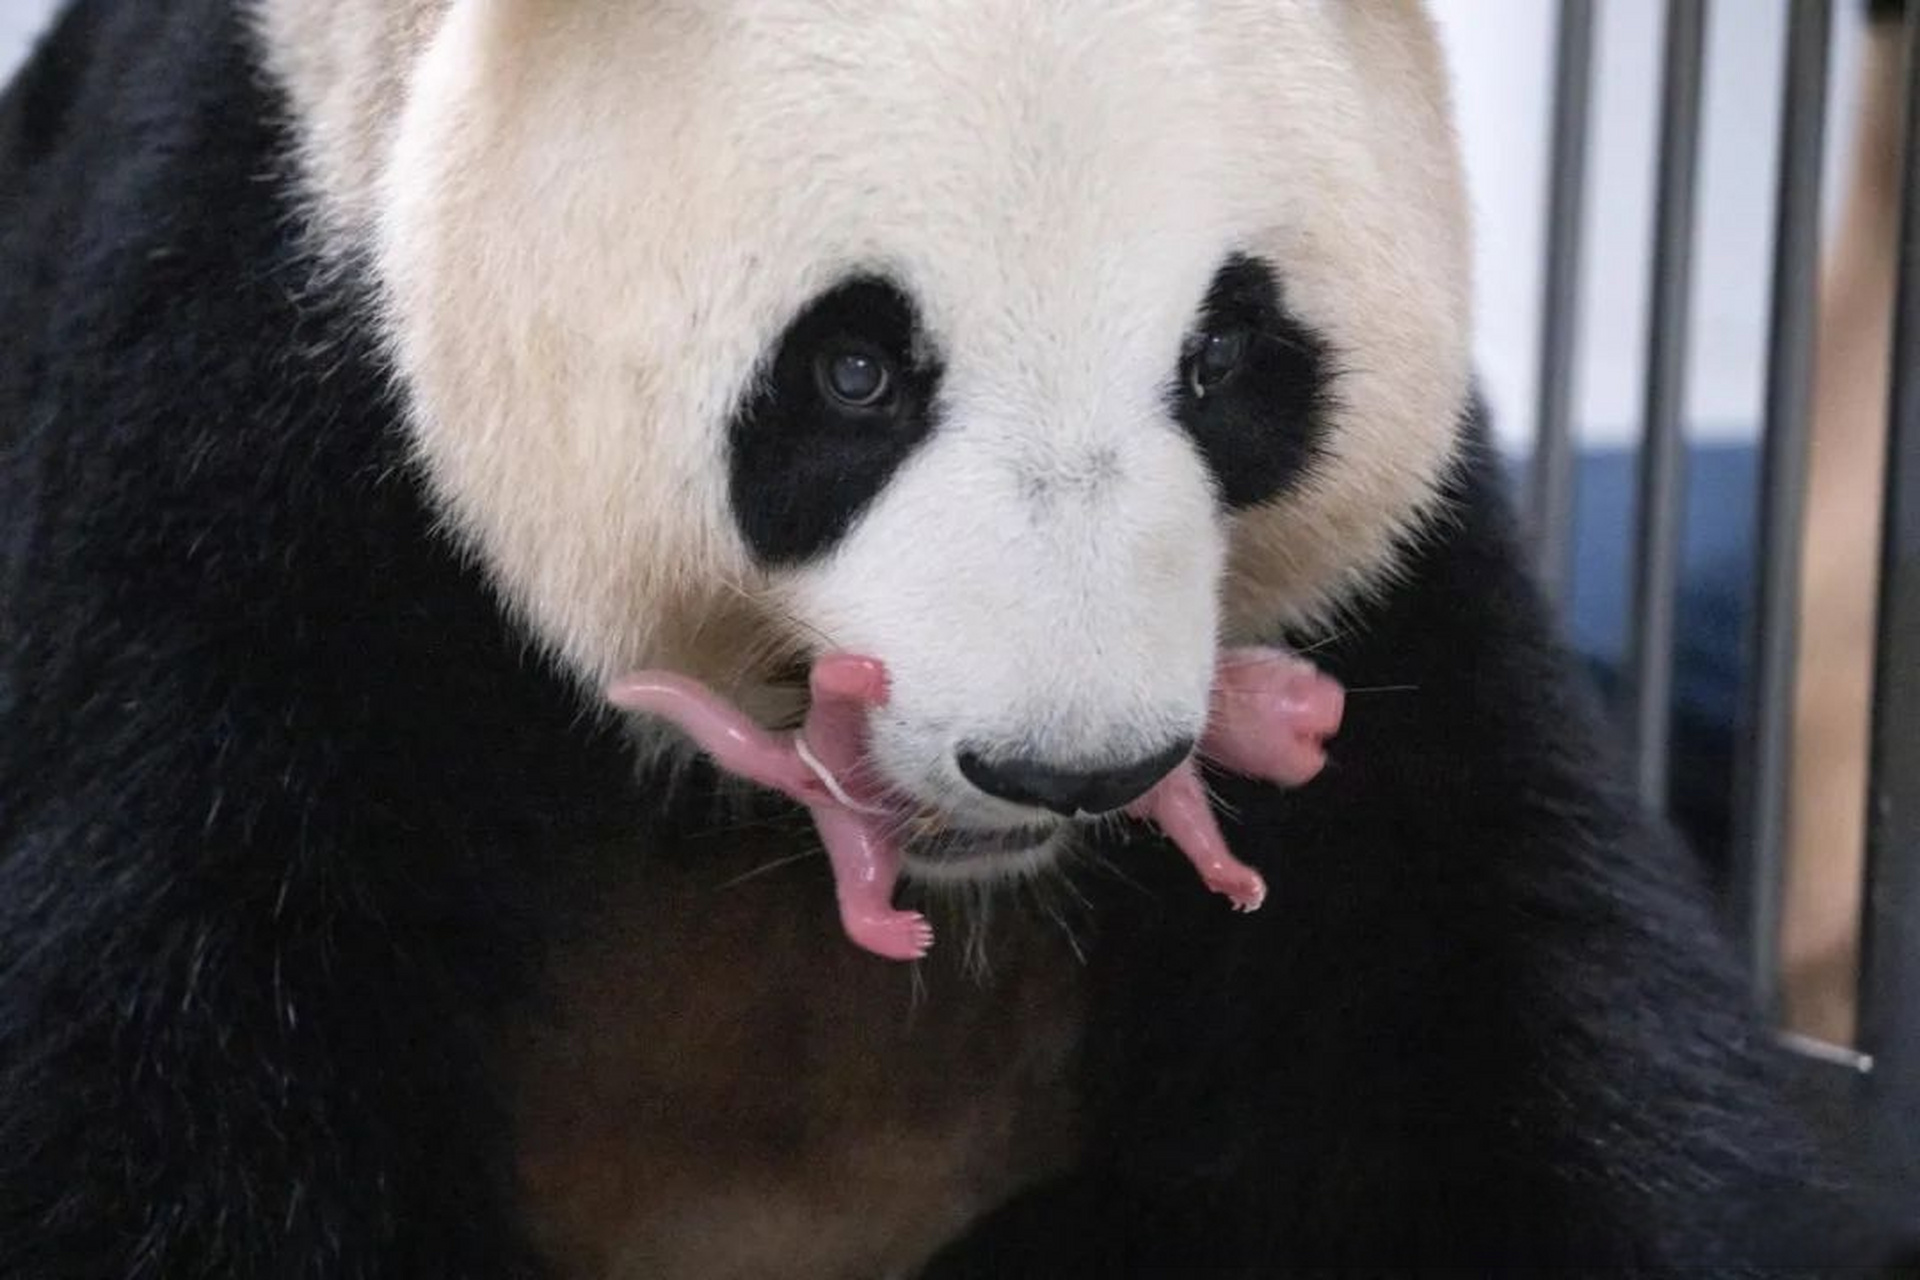 据韩国三星爱宝乐园介绍,大熊猫爱宝于7月7日清晨顺利产下一对雌性